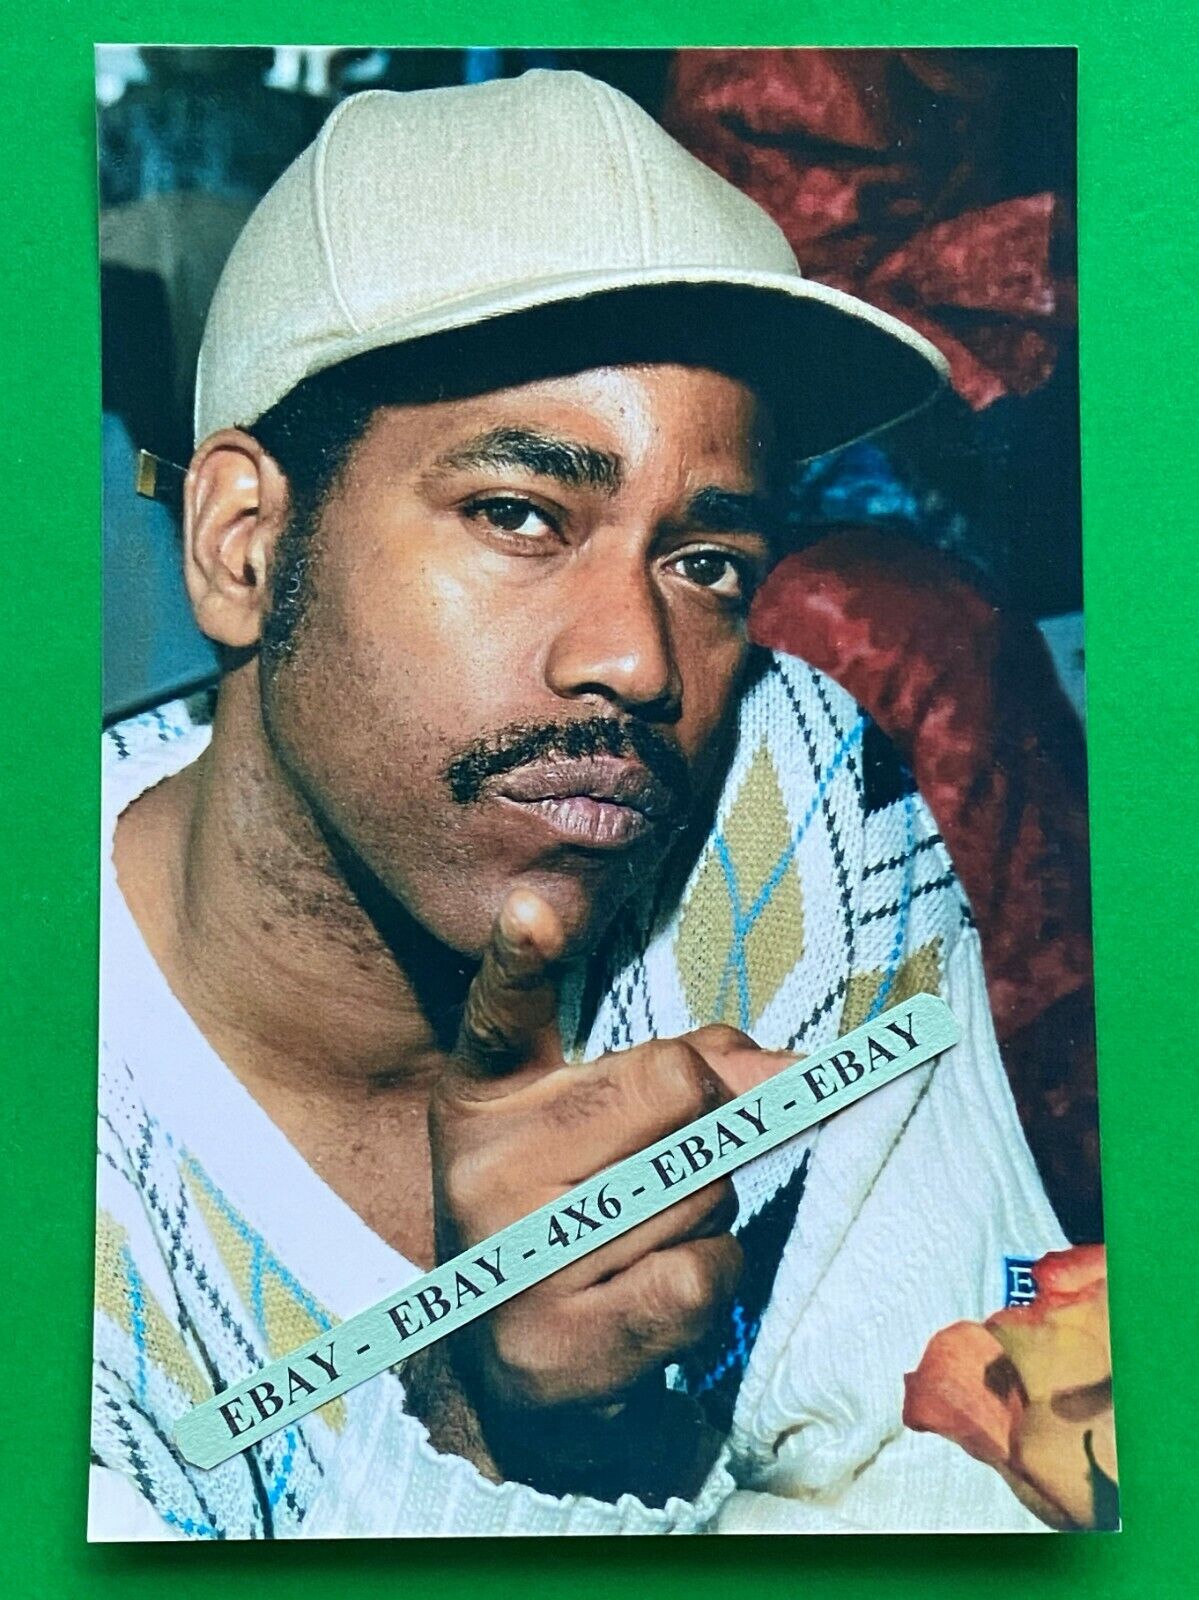 Found 4X6 PHOTO of American Rapper Kanye Omari West  